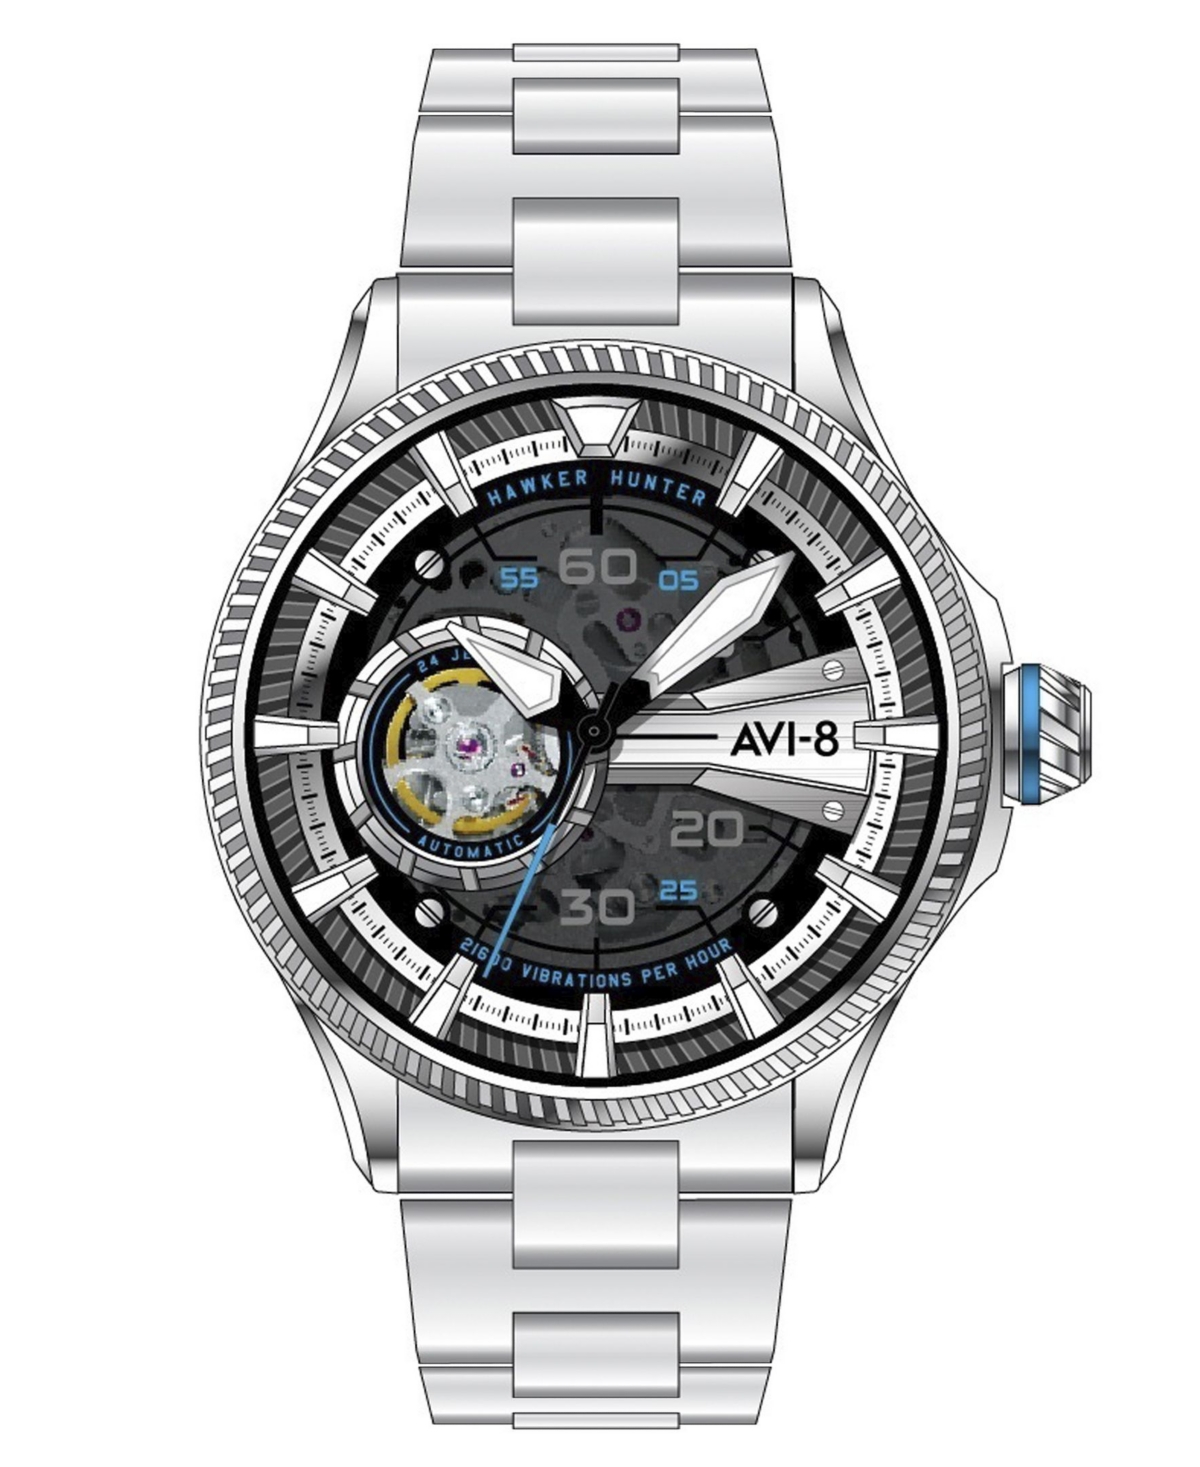 Avi-8 Men's Hawker Hunter Avon Automatic Diamonds Silver Tone Stainless Steel Bracelet Watch, 44mm